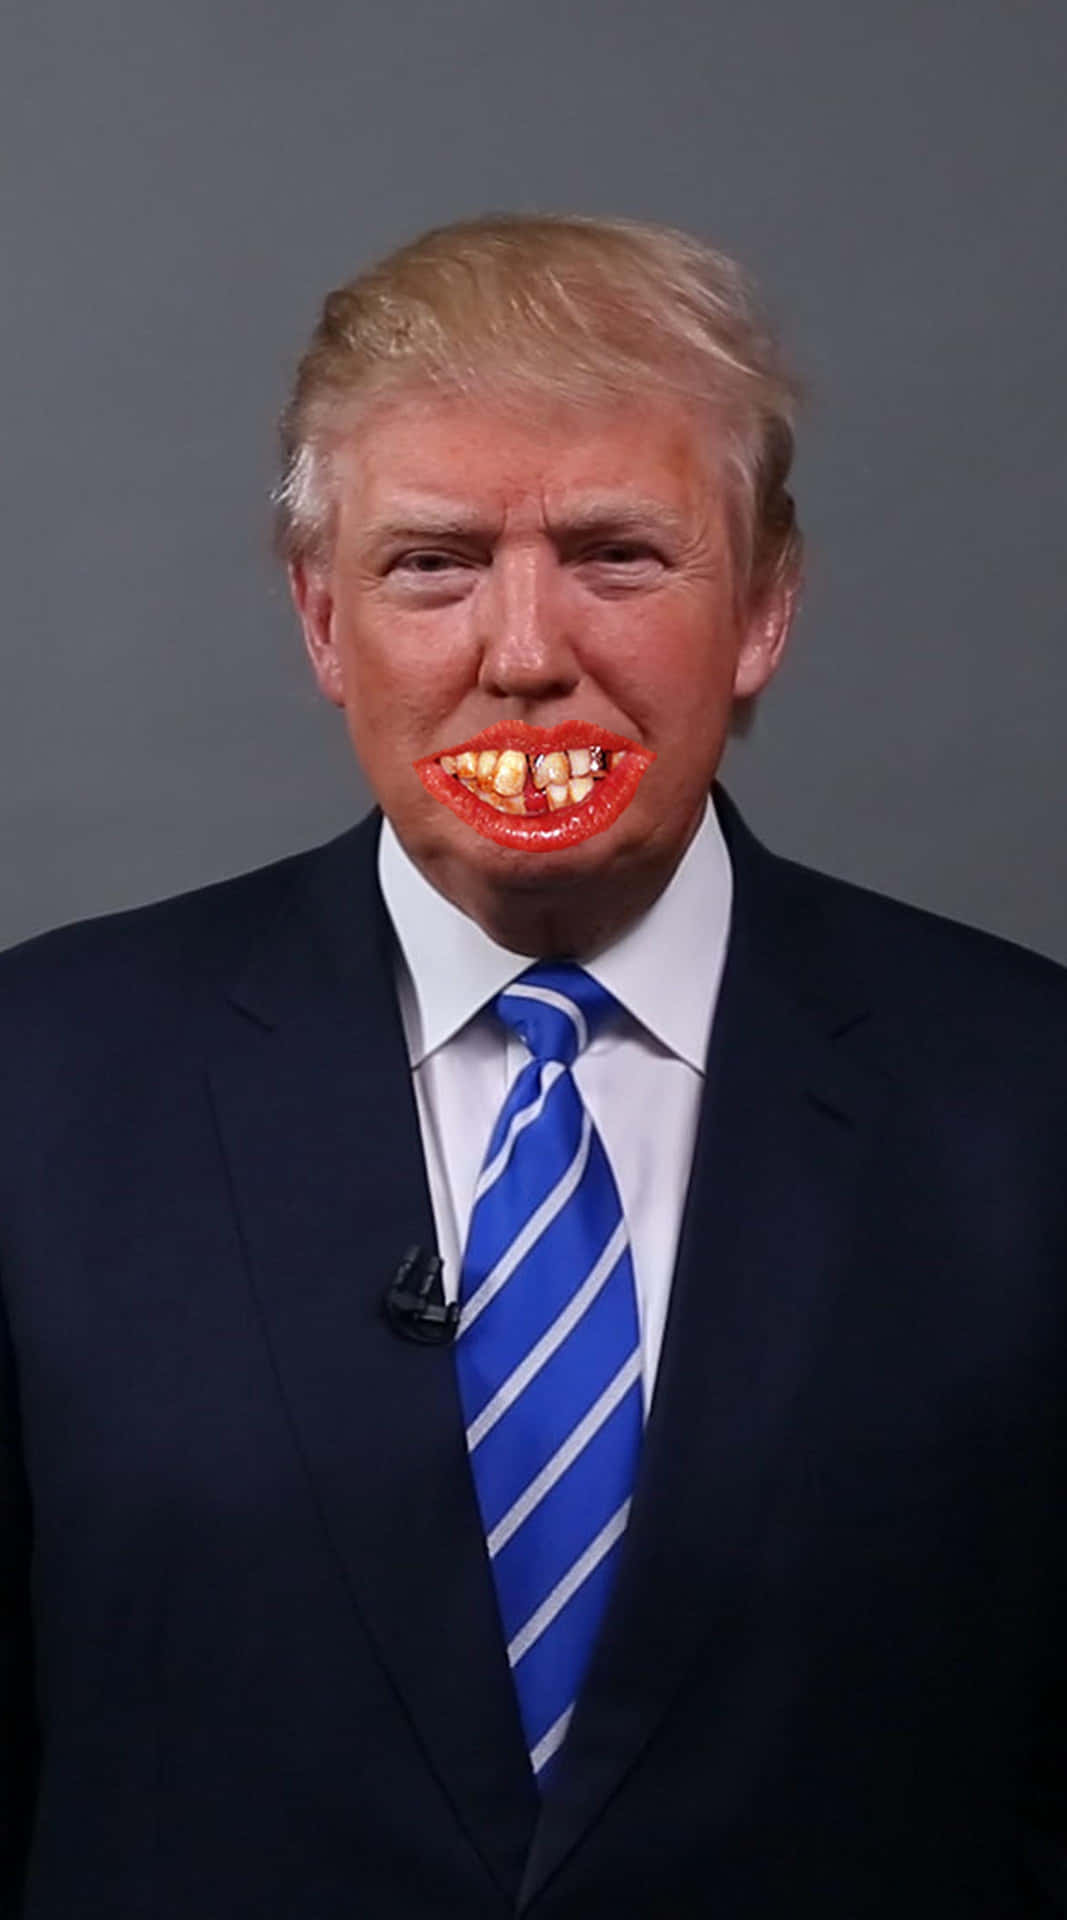 Immaginedivertente Di Donald Trump Con Una Faccia Buffa.